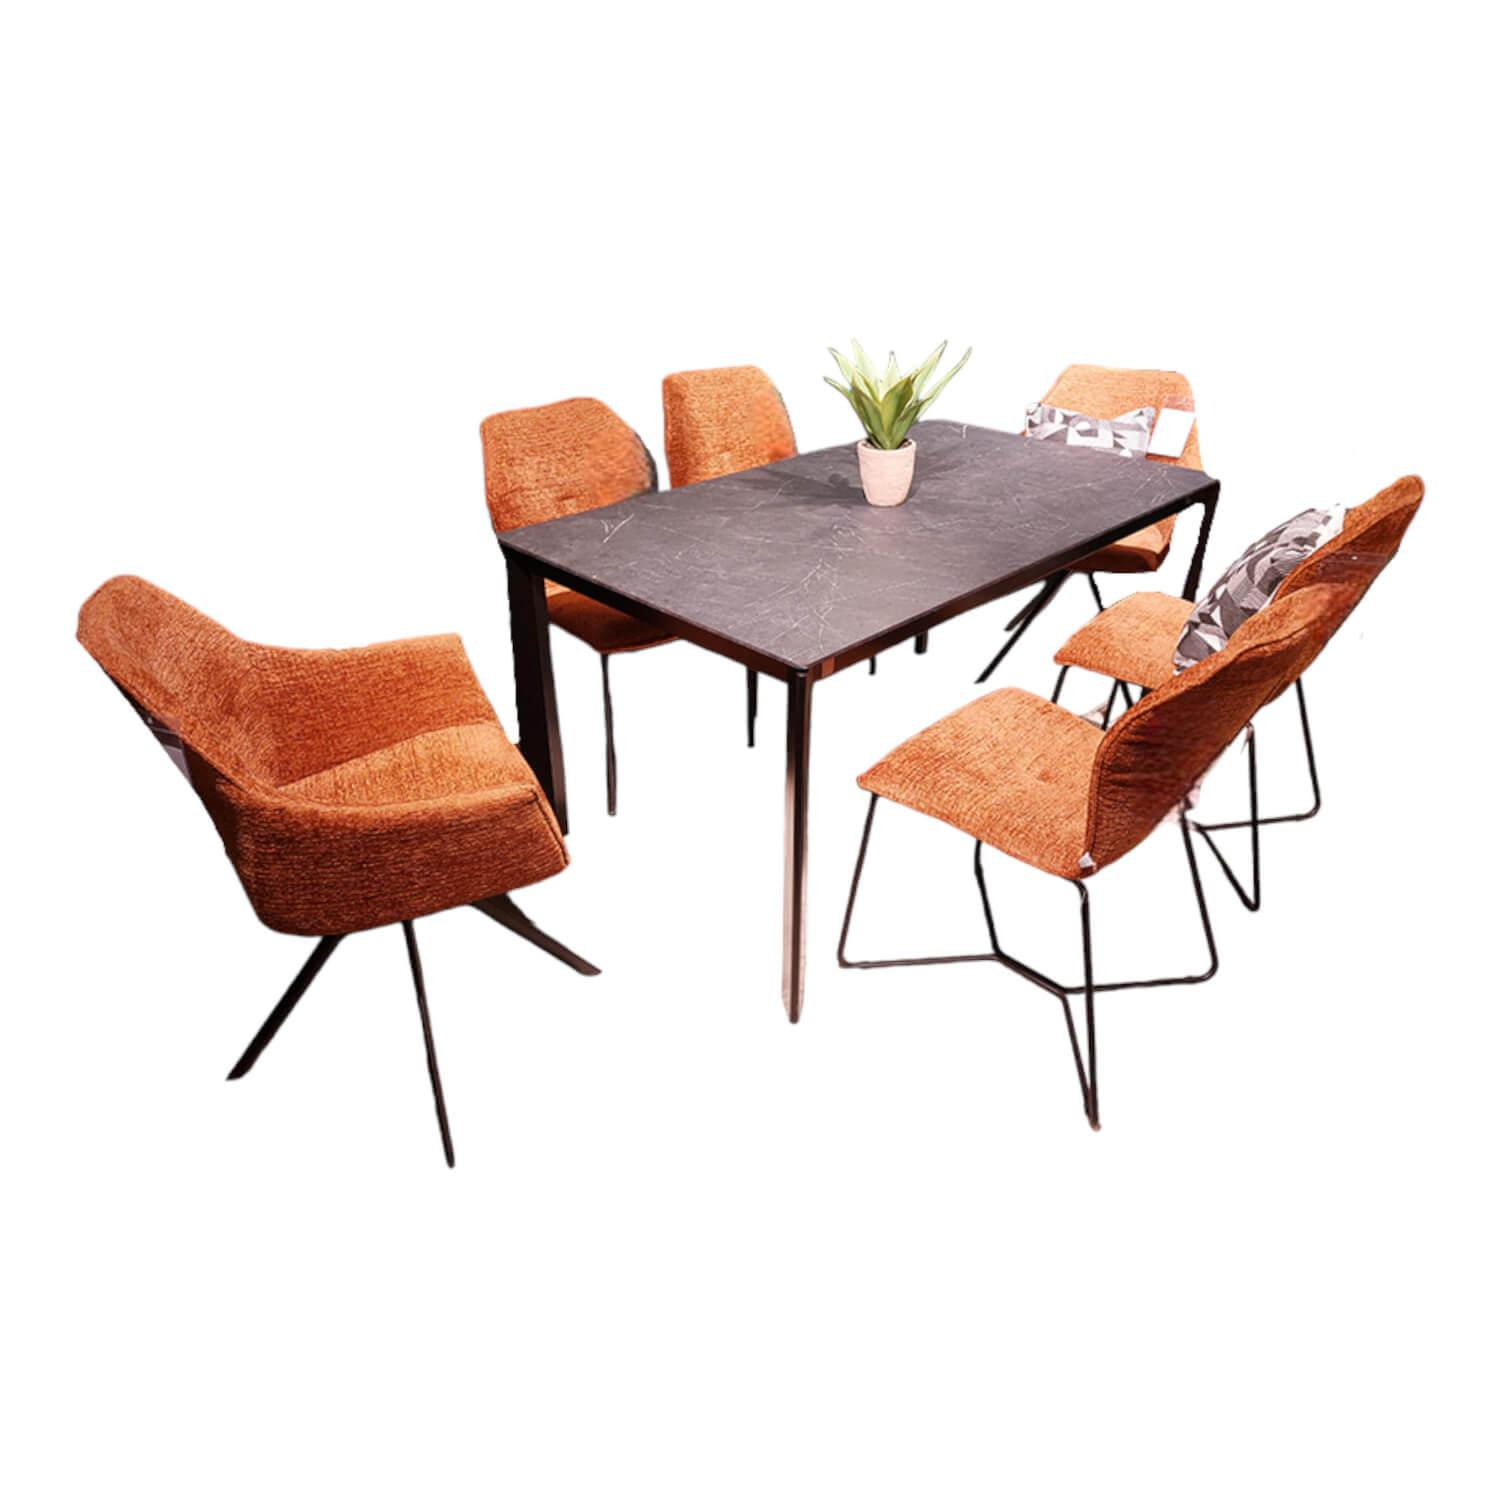 6er-Set Stuhl Global Pinto Bezug Stoff Fusion Copper Orange Braun Gestell Aluminium Schwarz Pulverbeschichtet Ohne Tisch